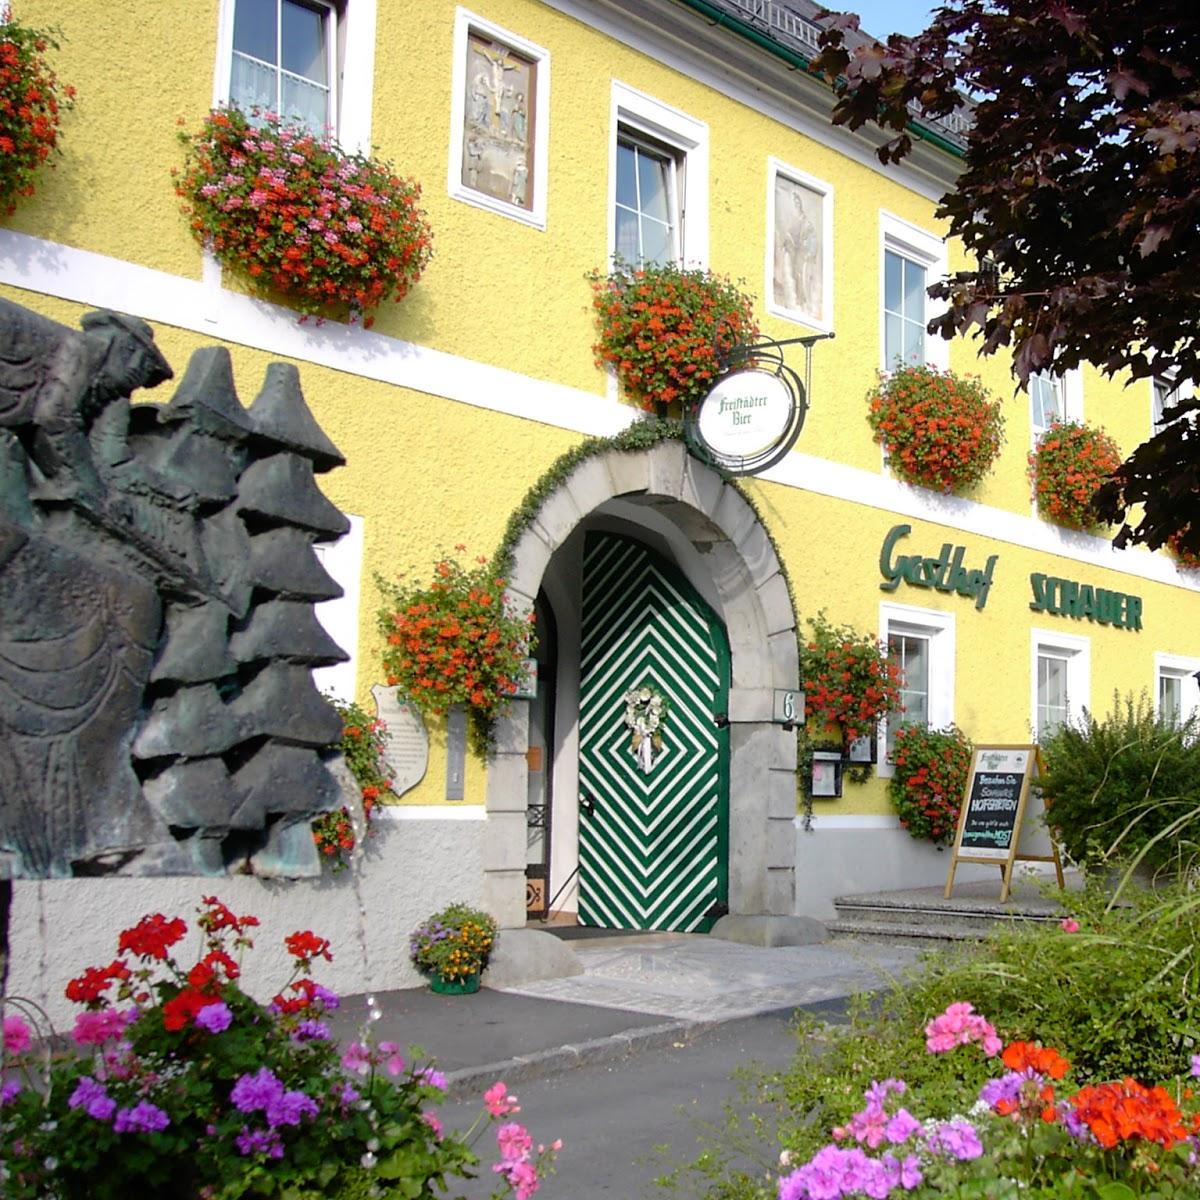 Restaurant "Gasthof Schauer" in Waldhausen im Strudengau